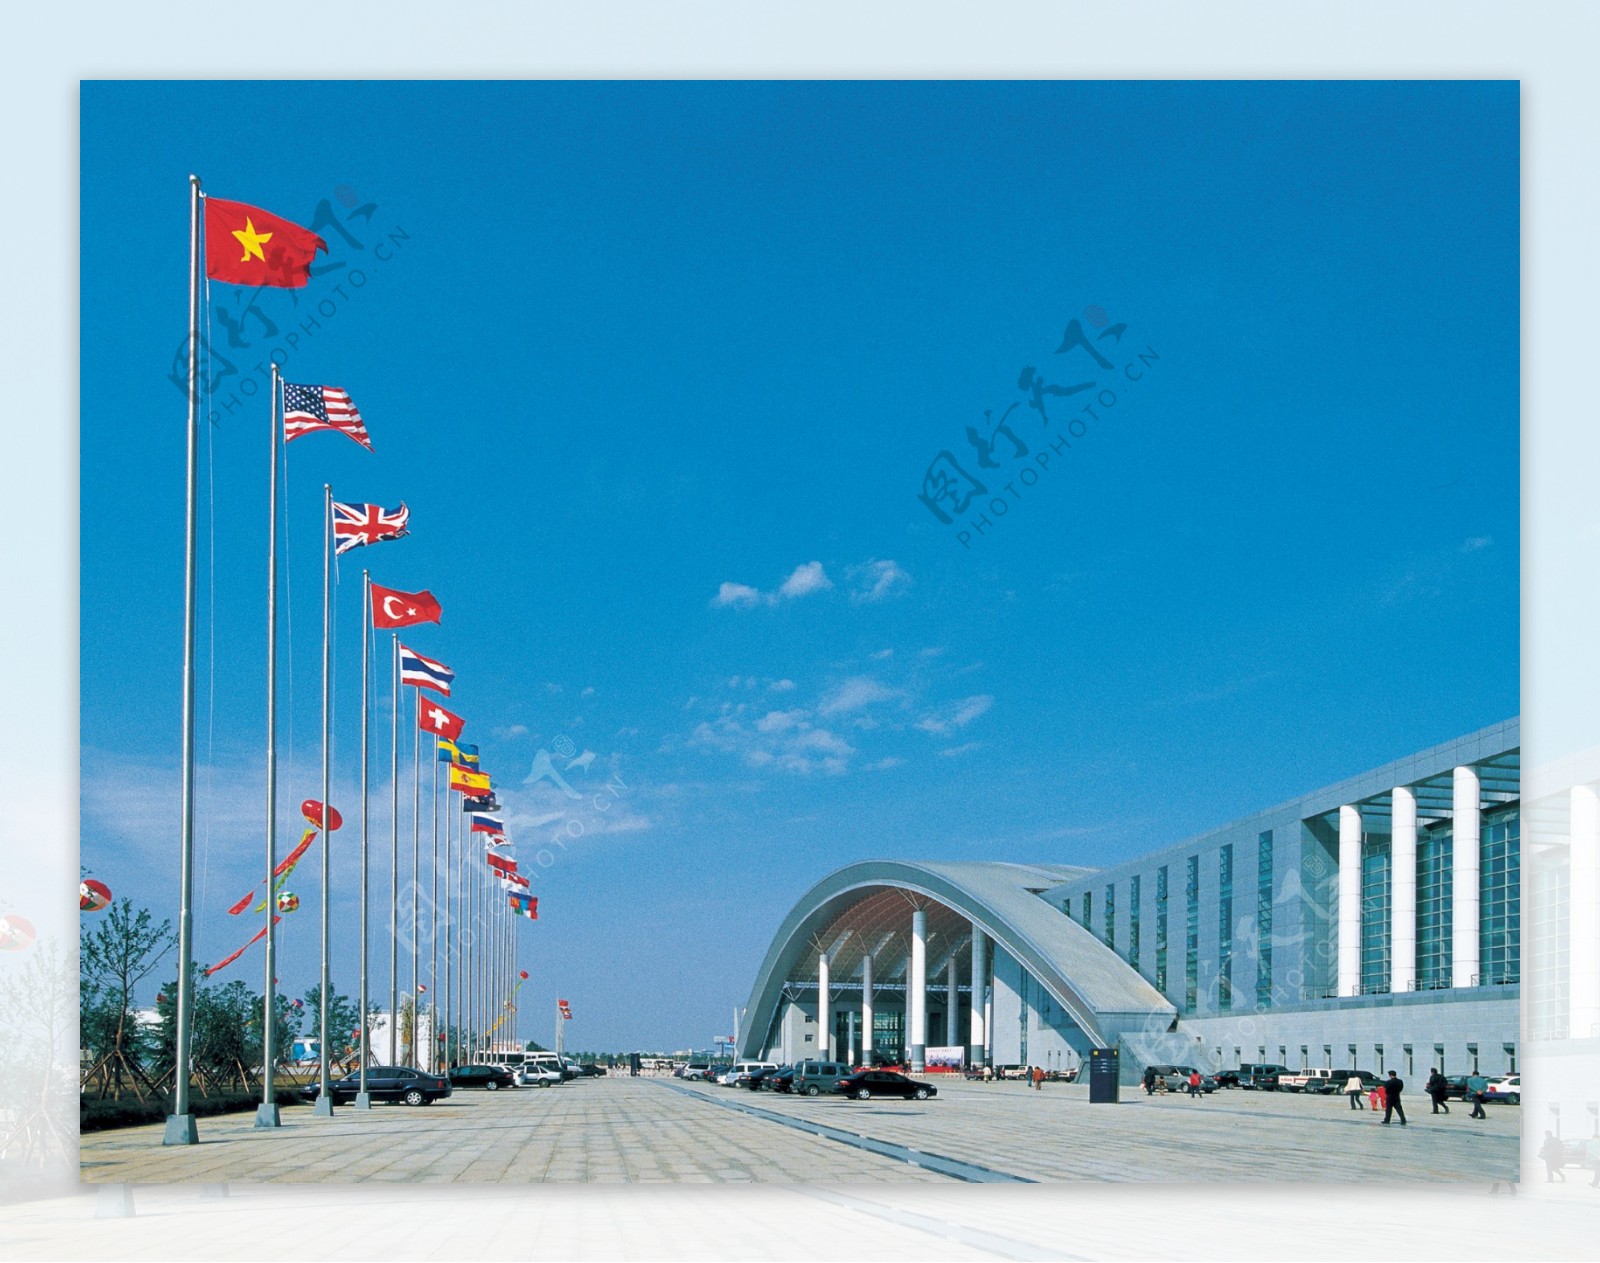 宁波国际会展中心图片